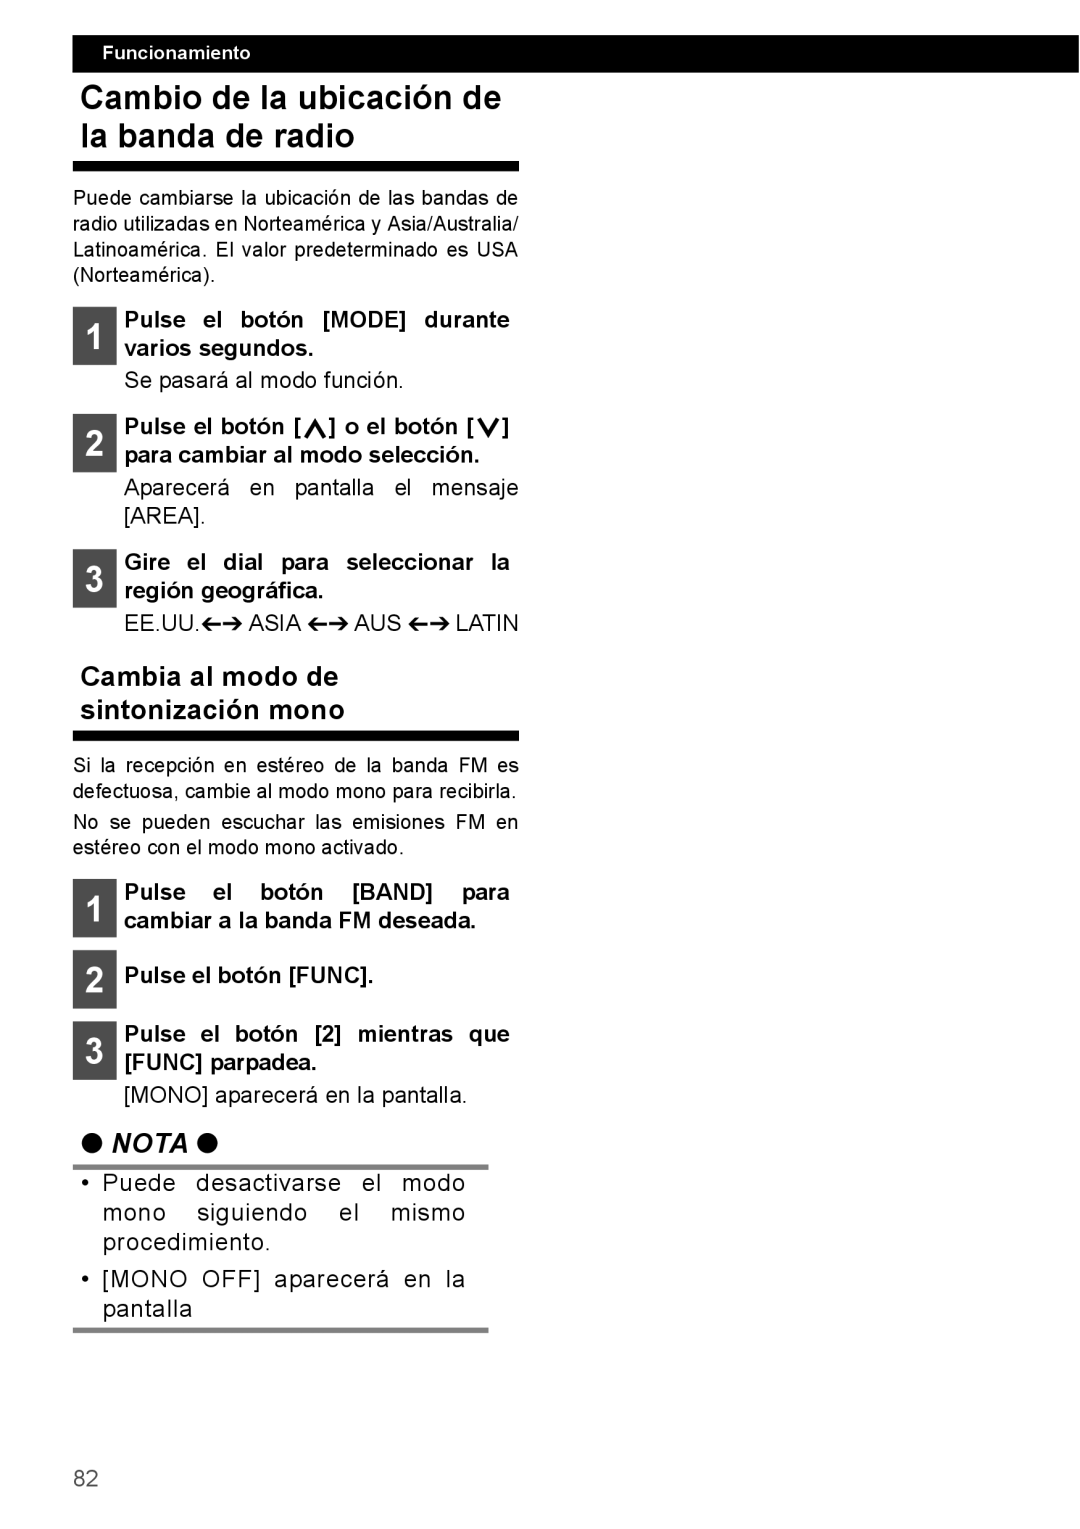 Eclipse - Fujitsu Ten CD1000 manual Cambio de la ubicación de la banda de radio, Cambia al modo de sintonización mono, Nota 